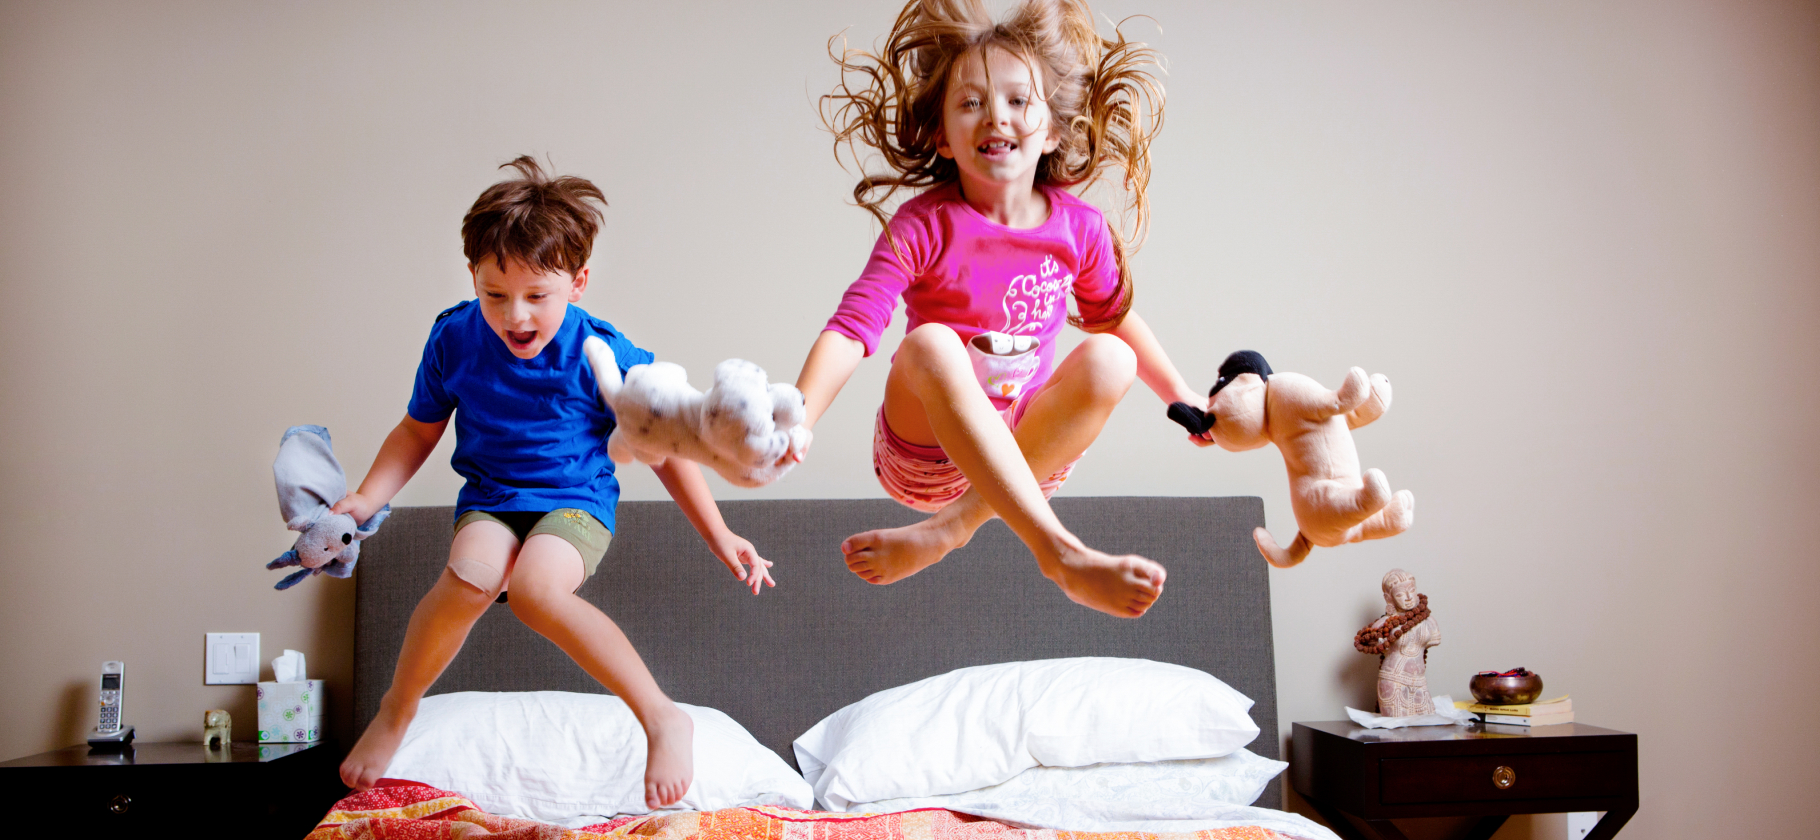 «Ваши дети скачут по моей голове»: 7 способов выжить рядом с шумными соседями